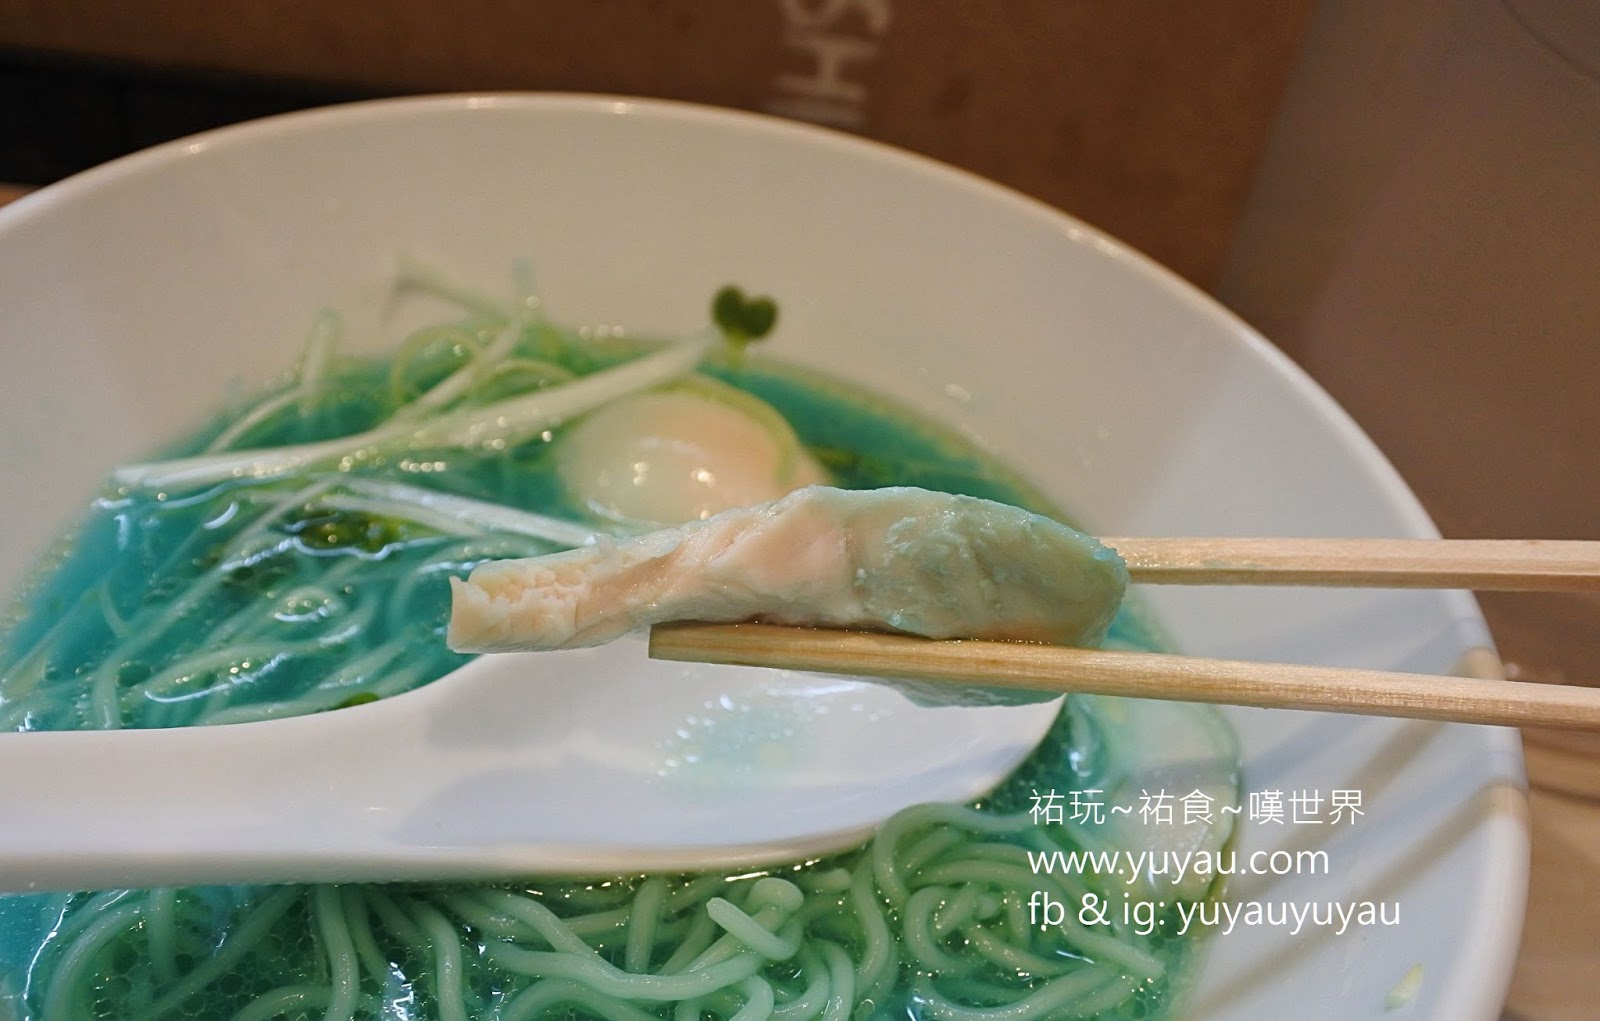 東京美食 - 拉麵吉法師 KIPPOSHI 超特別藍色濃厚雞湯拉麵 (有影片)